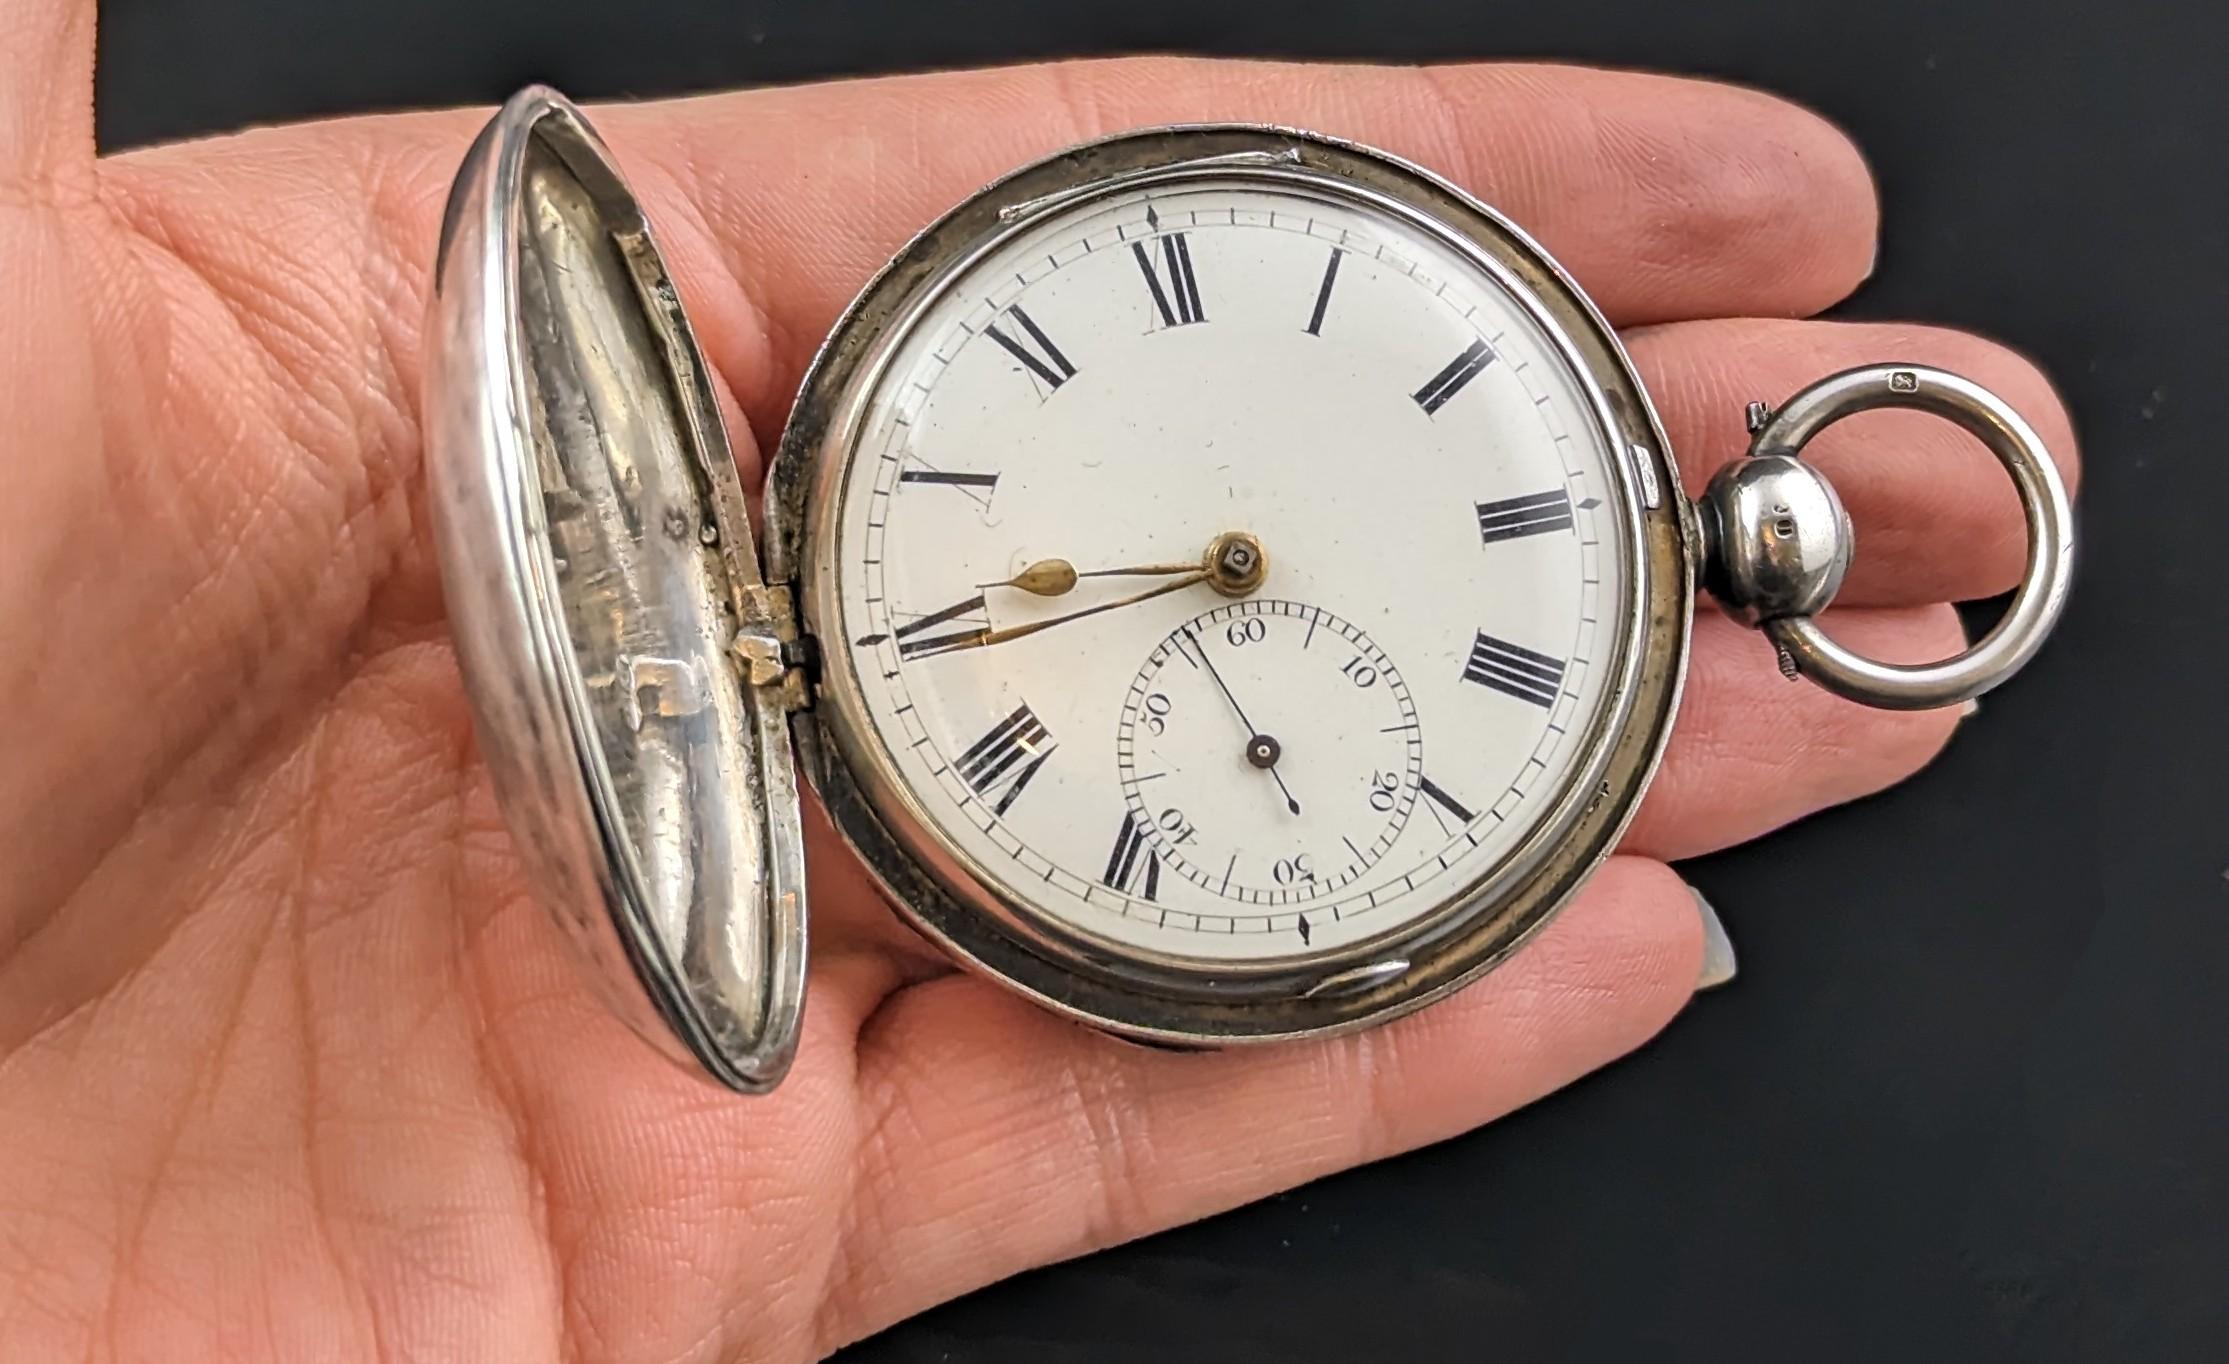 Une magnifique montre de poche en argent sterling d'époque Régence.

Il s'agit d'une grande montre de poche substantielle avec un lourd boîtier de chasseur en argent, entièrement poinçonné.

Whiting possède un cadran blanc avec des chiffres romains